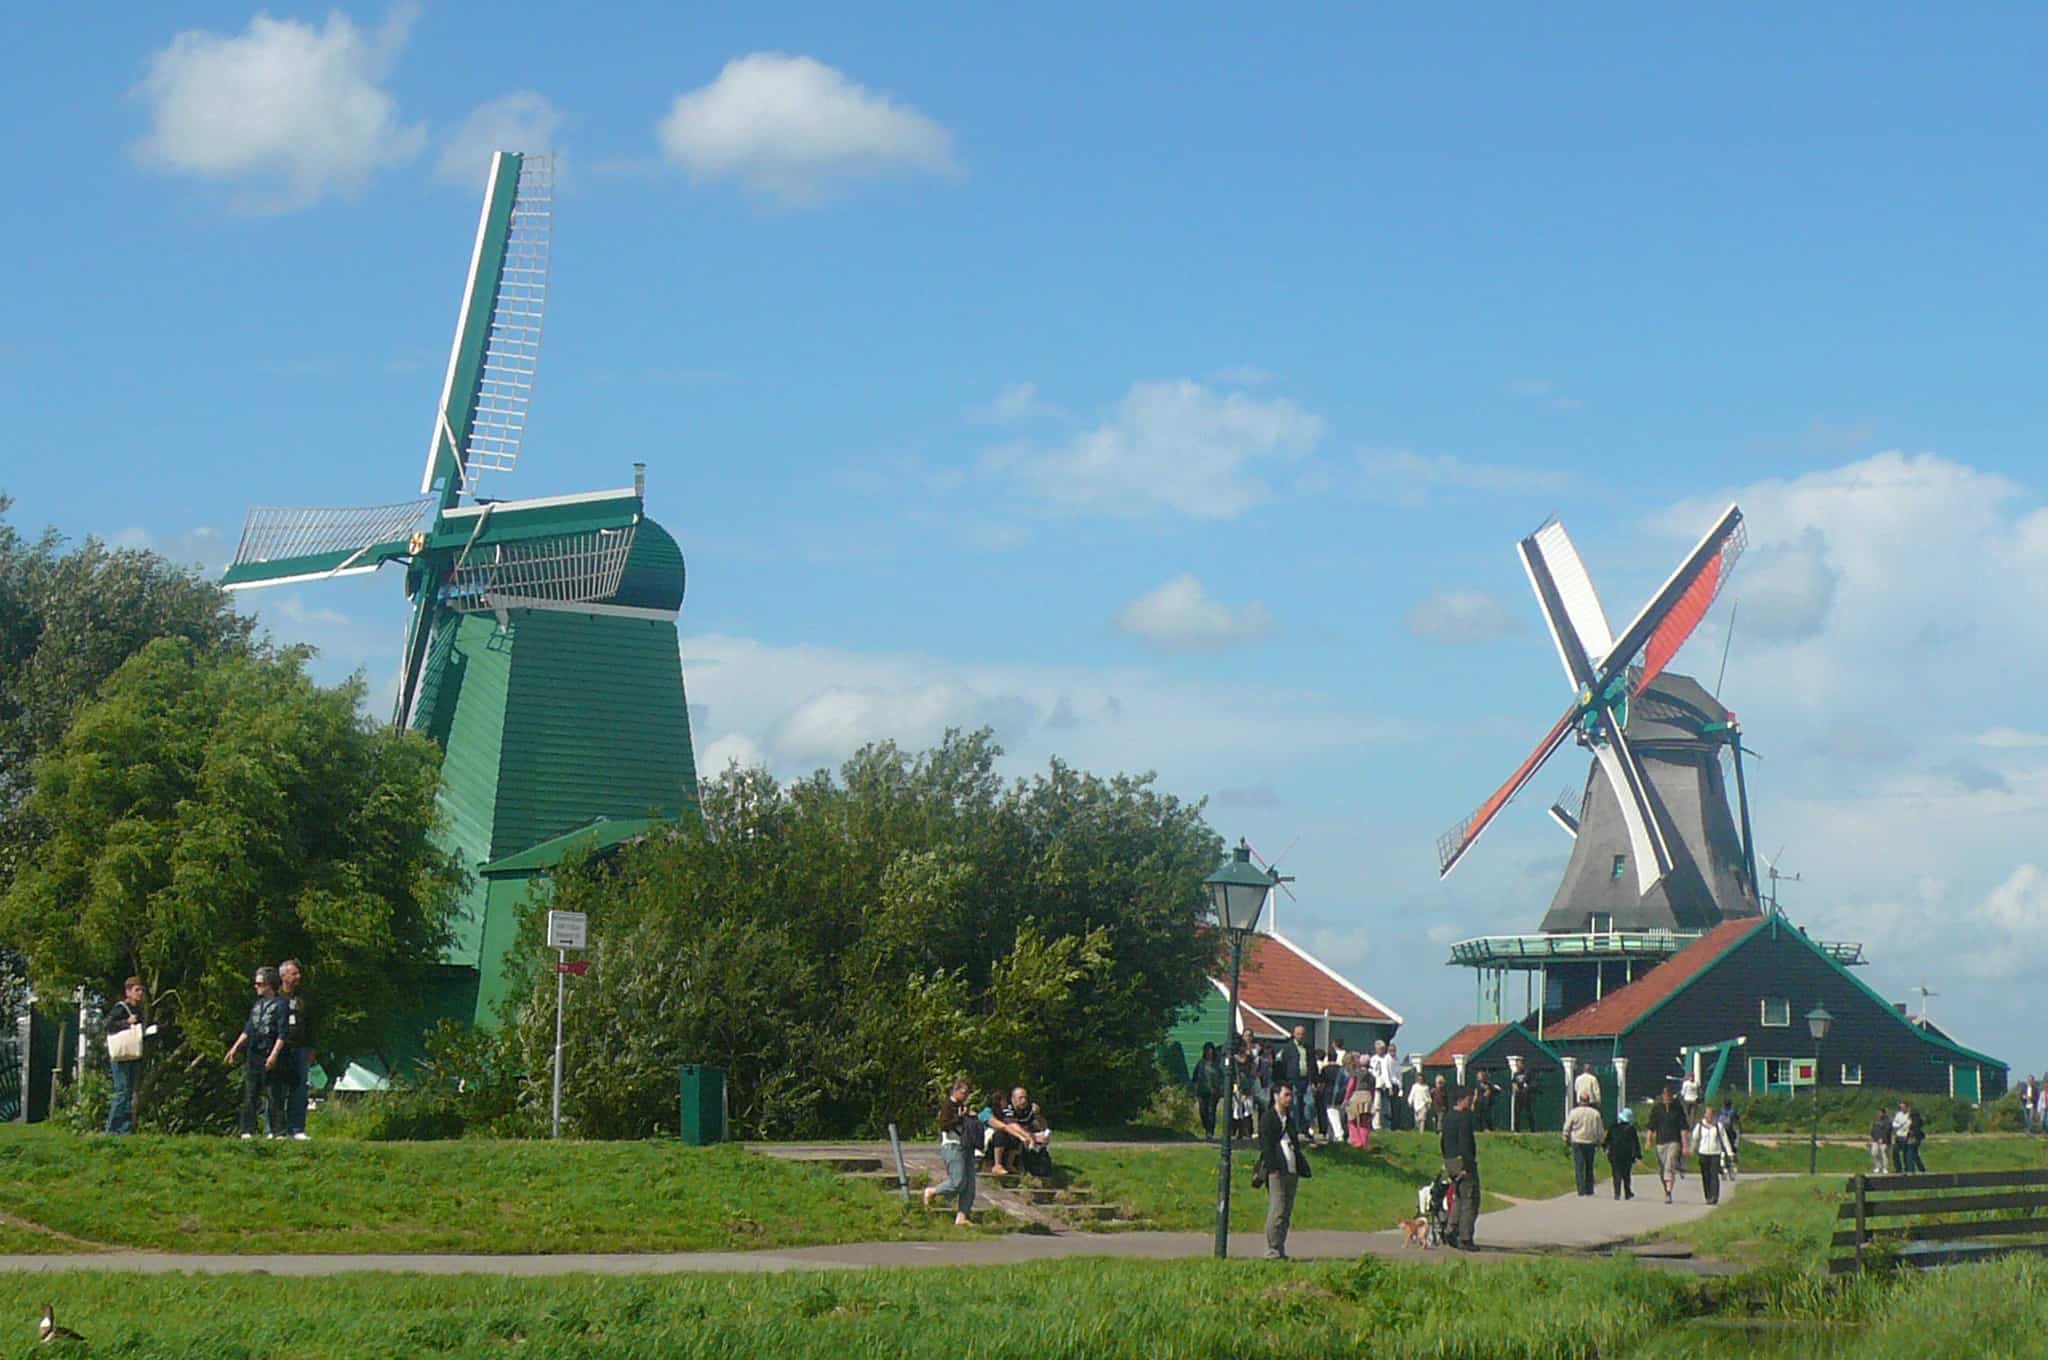 The Windmills